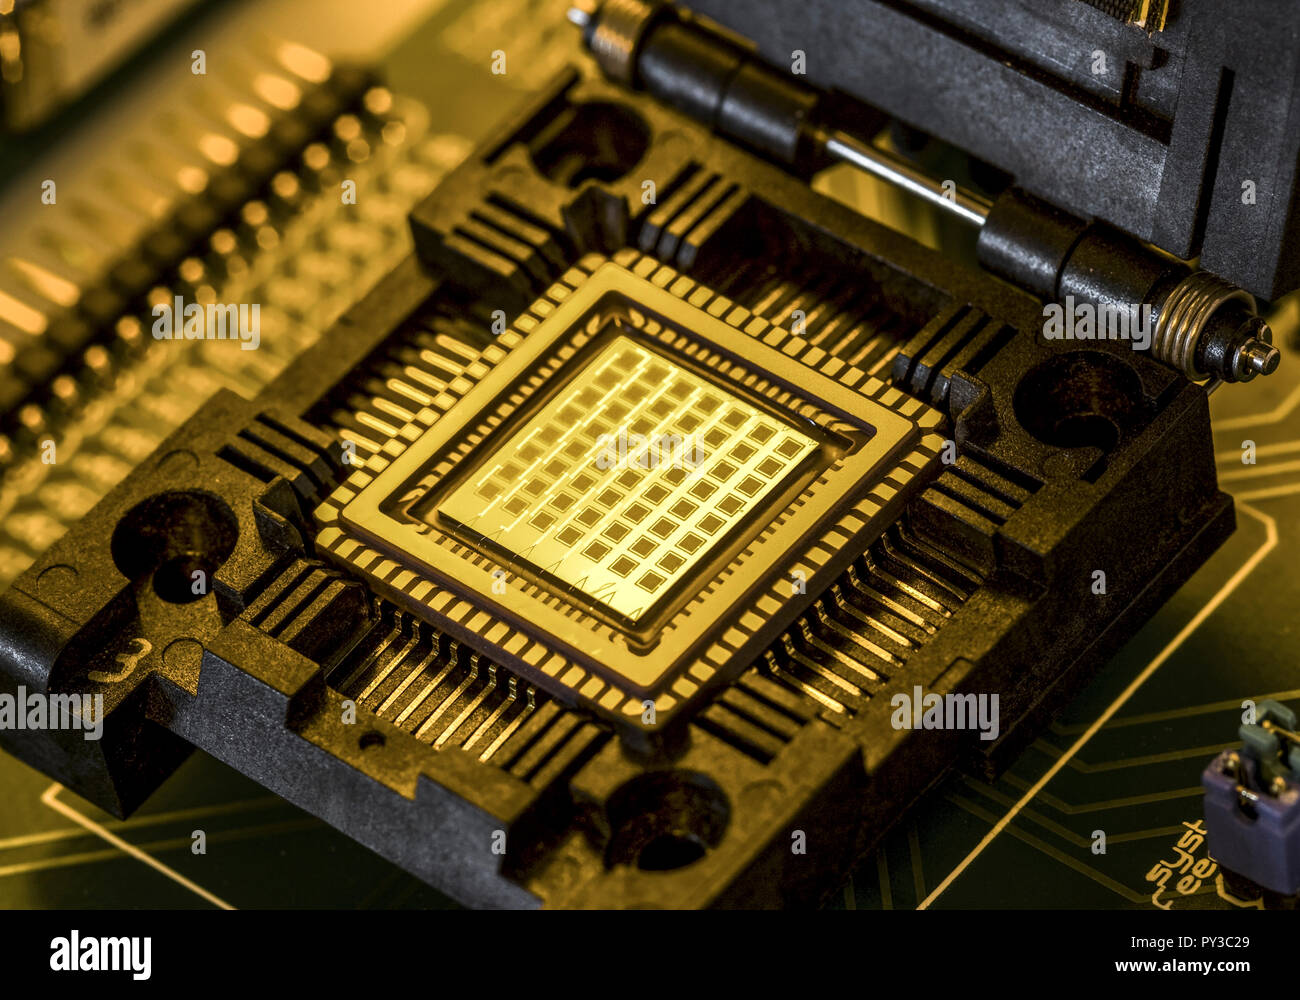 Mit Brennstoffzellen Mikrochip, Energieversorgung chipintegrierte Foto de stock